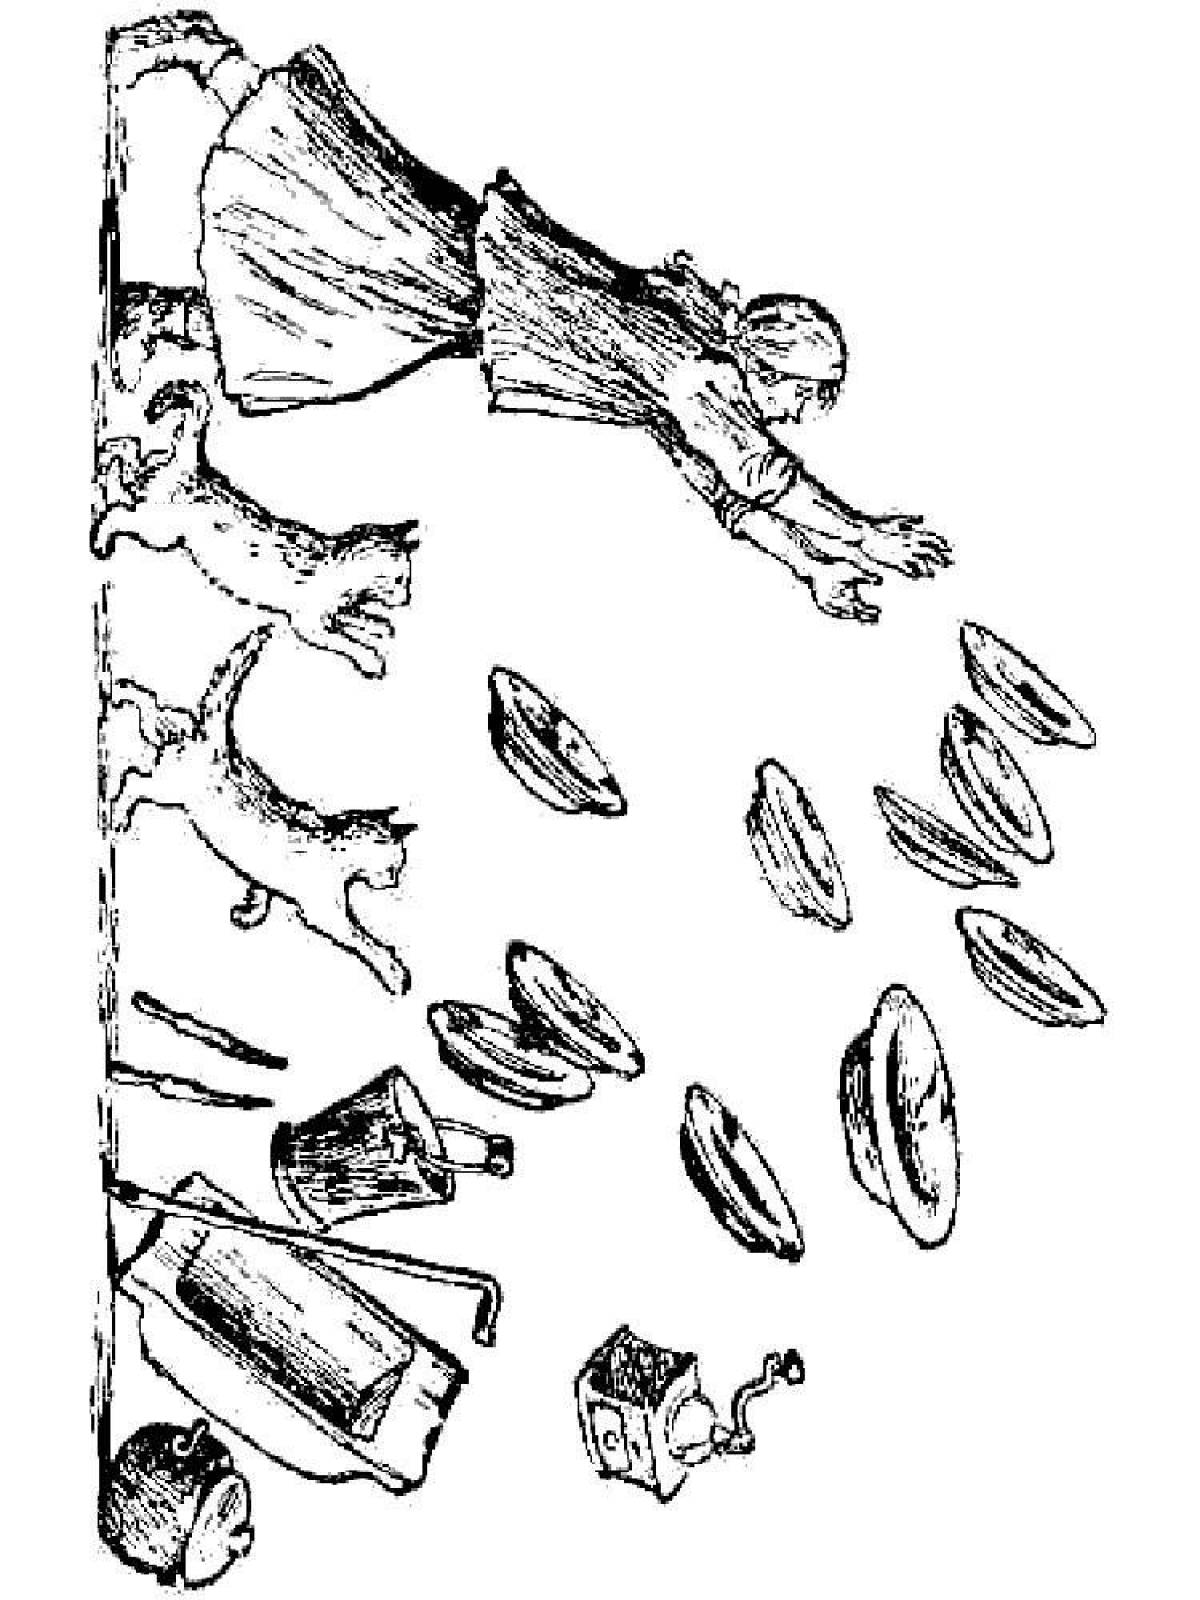 Иллюстрации Федорино горе Чуковский раскраска